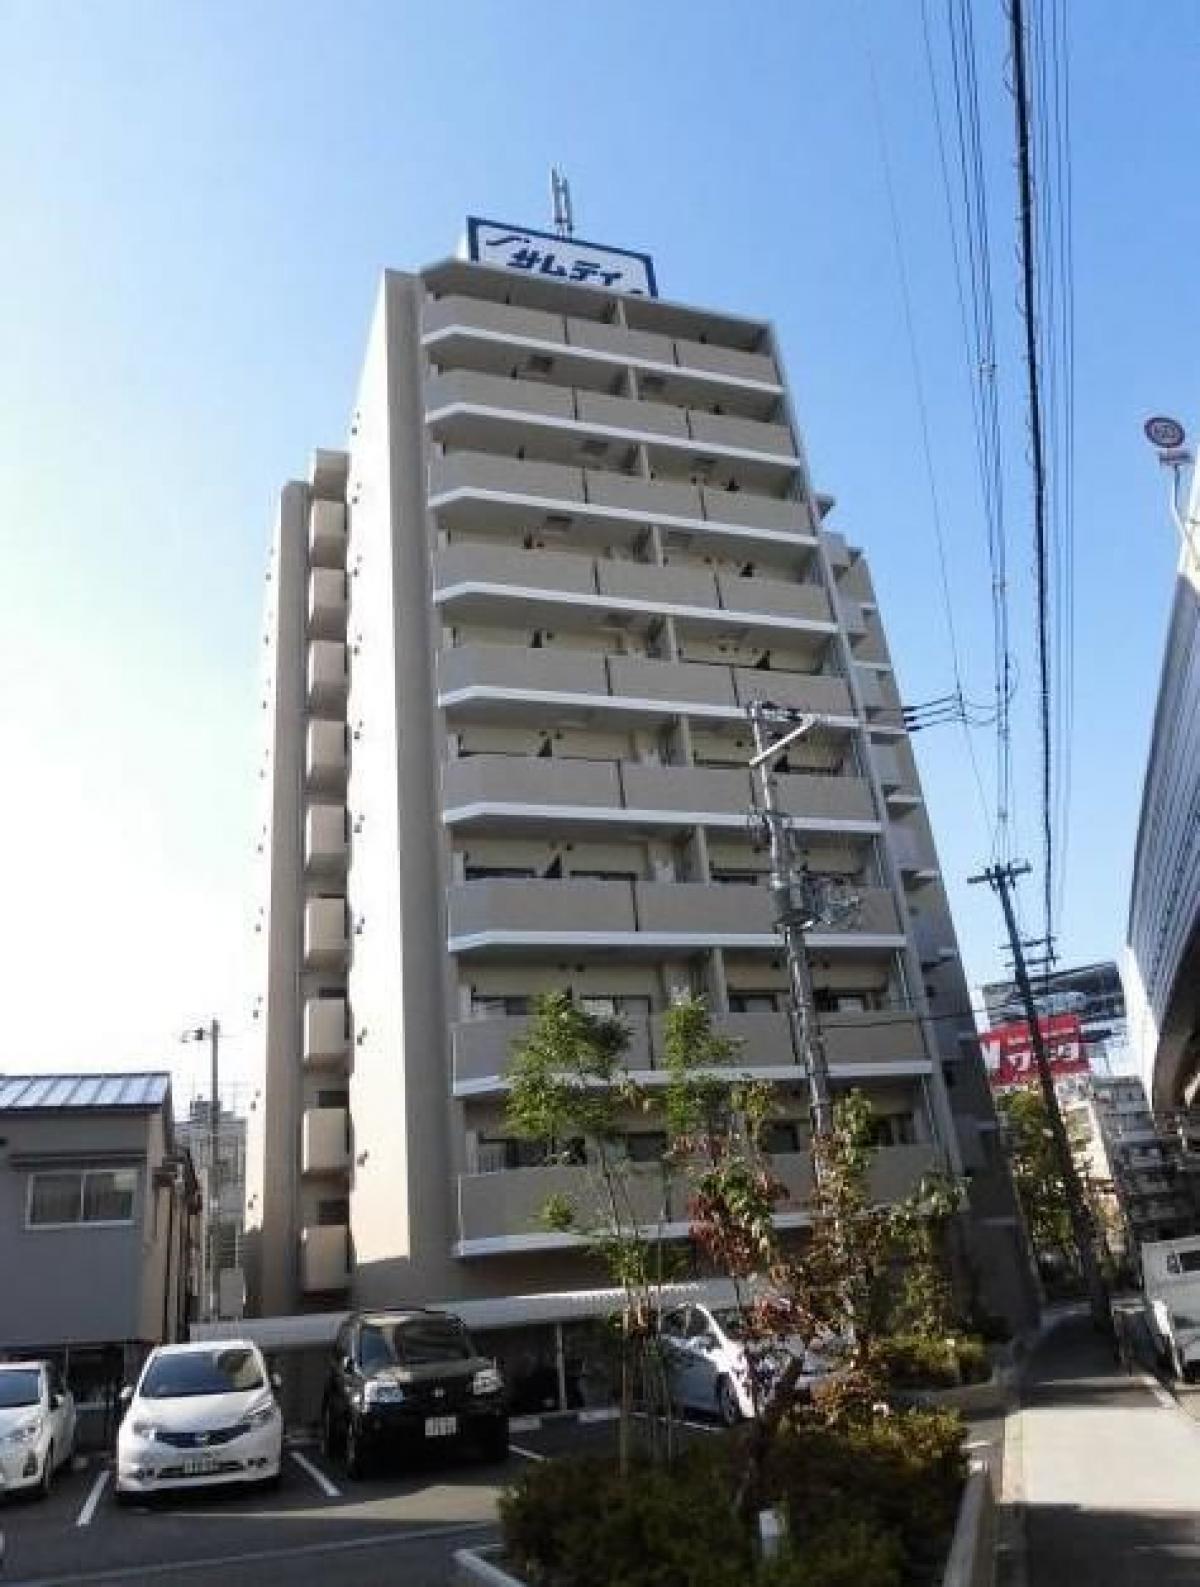 Picture of Apartment For Sale in Osaka Shi Fukushima Ku, Osaka, Japan